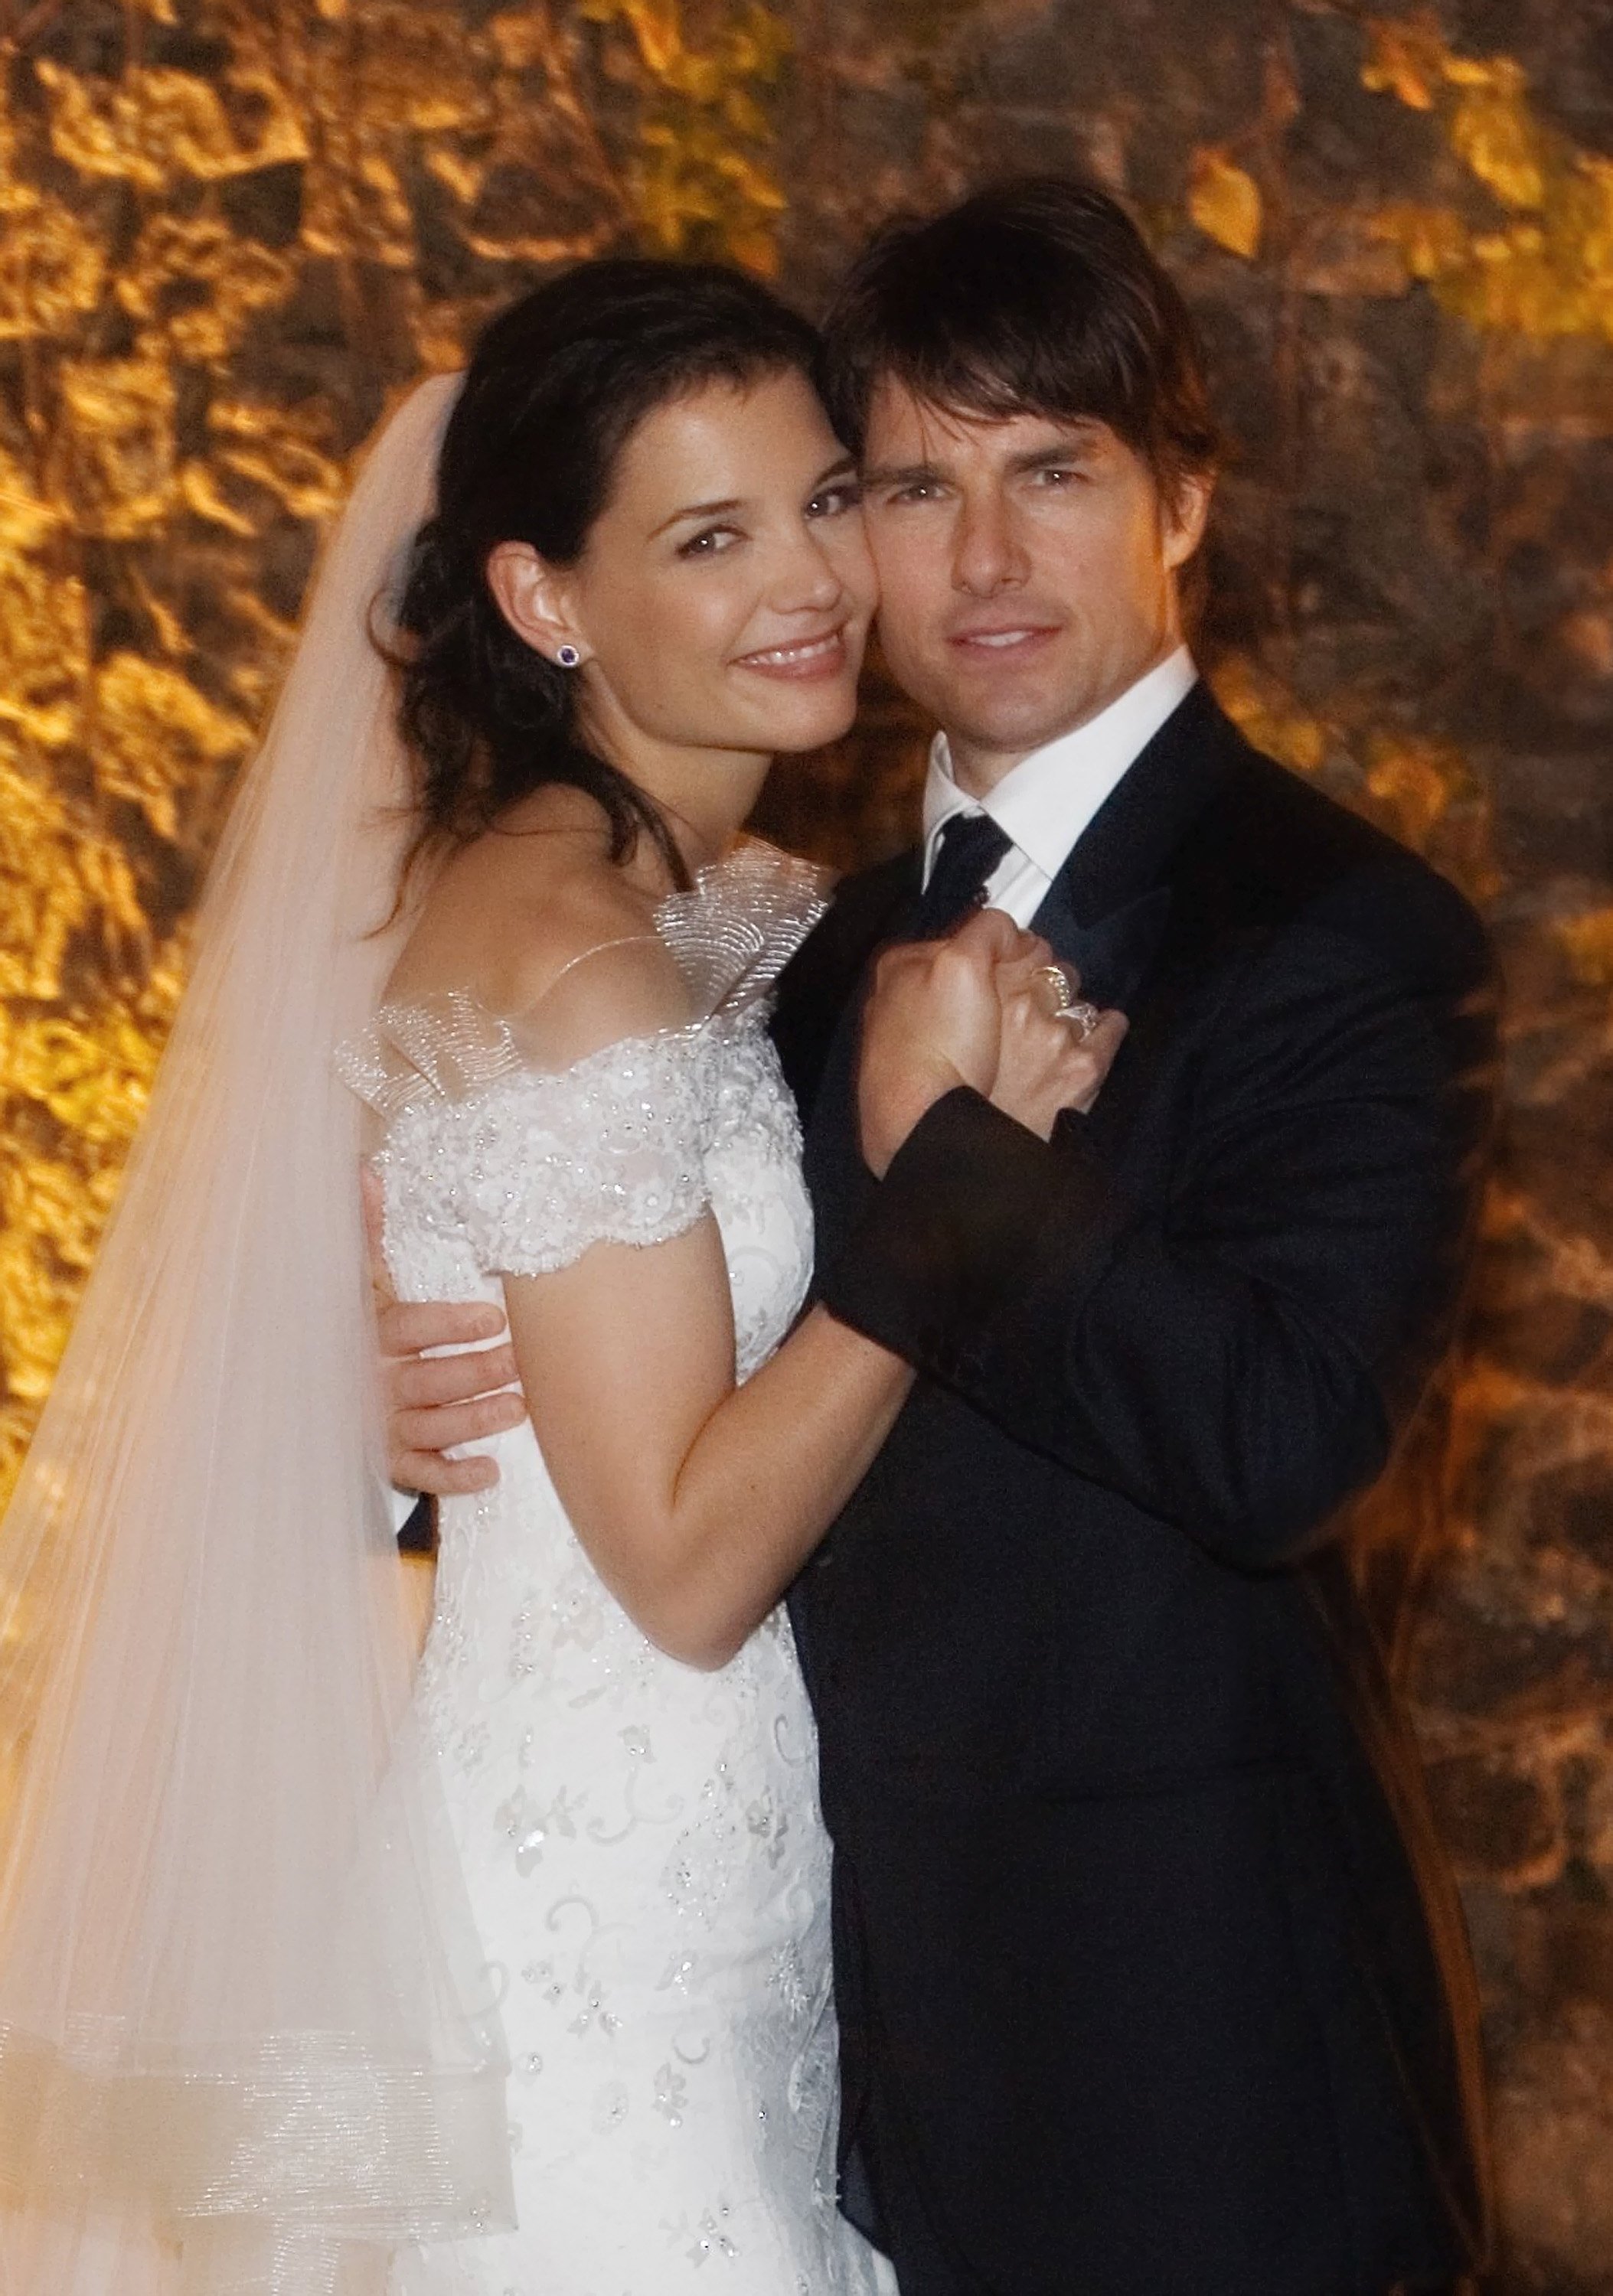 Tom Cruise und Katie Holmes posieren zusammen im Castello Odescalchi an ihrem Hochzeitstag 18. November 2006 in Bracciano, in der Nähe von Rom, Italien | Quelle: Getty Images